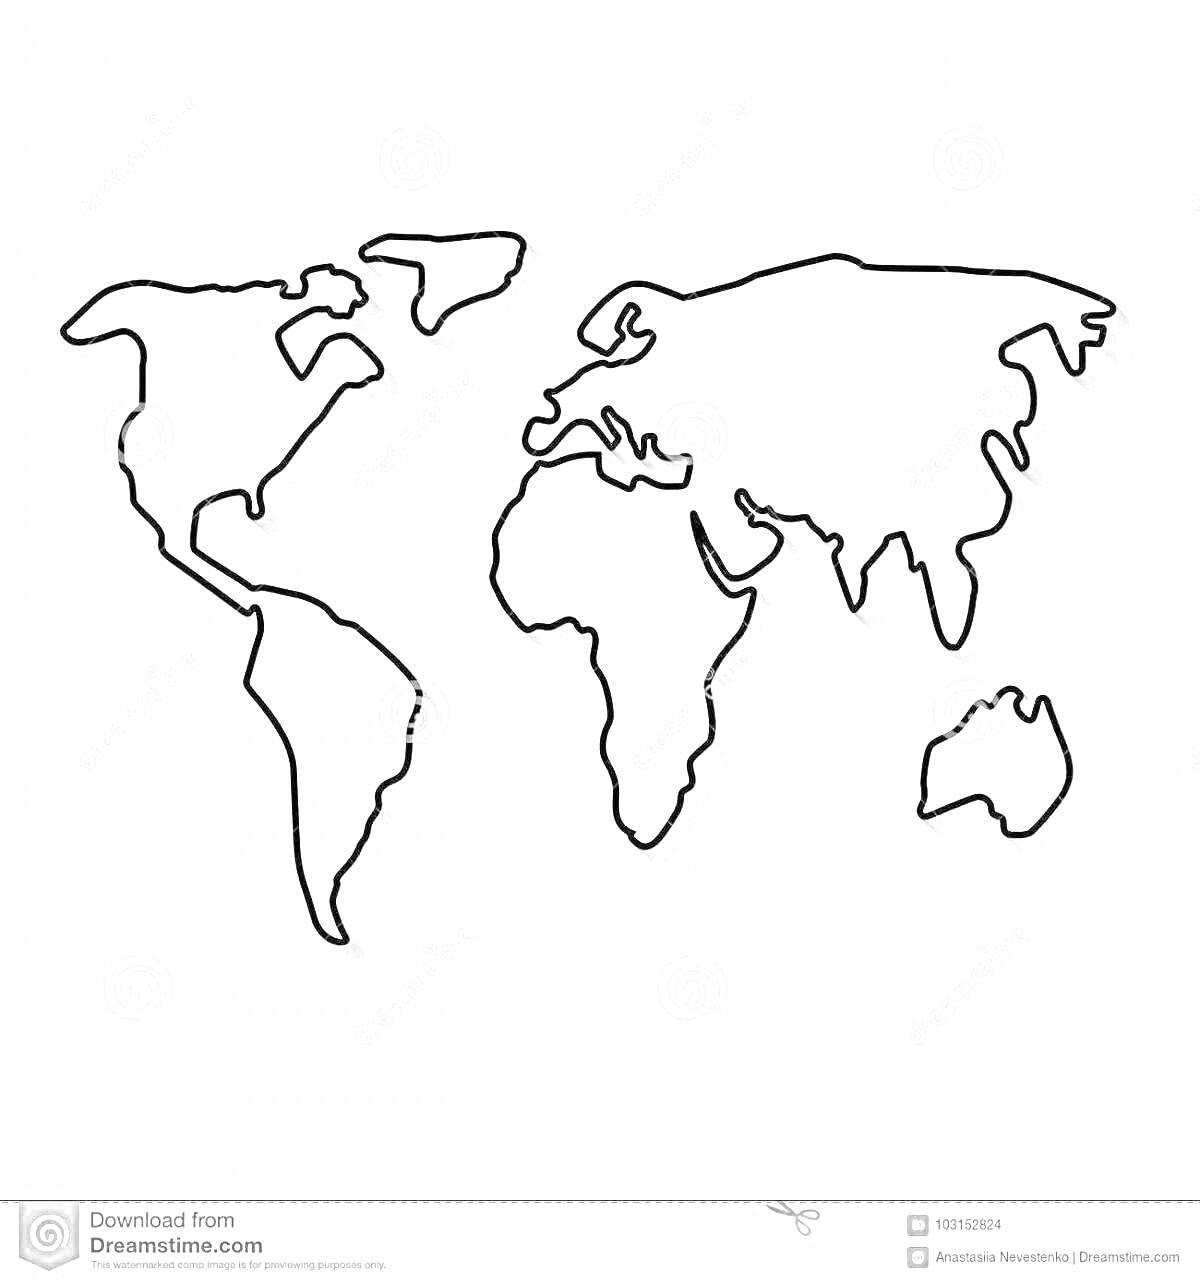 На раскраске изображено: Карта мира, Континенты, География, Северная Америка, Южная Америка, Европа, Азия, Африка, Австралия